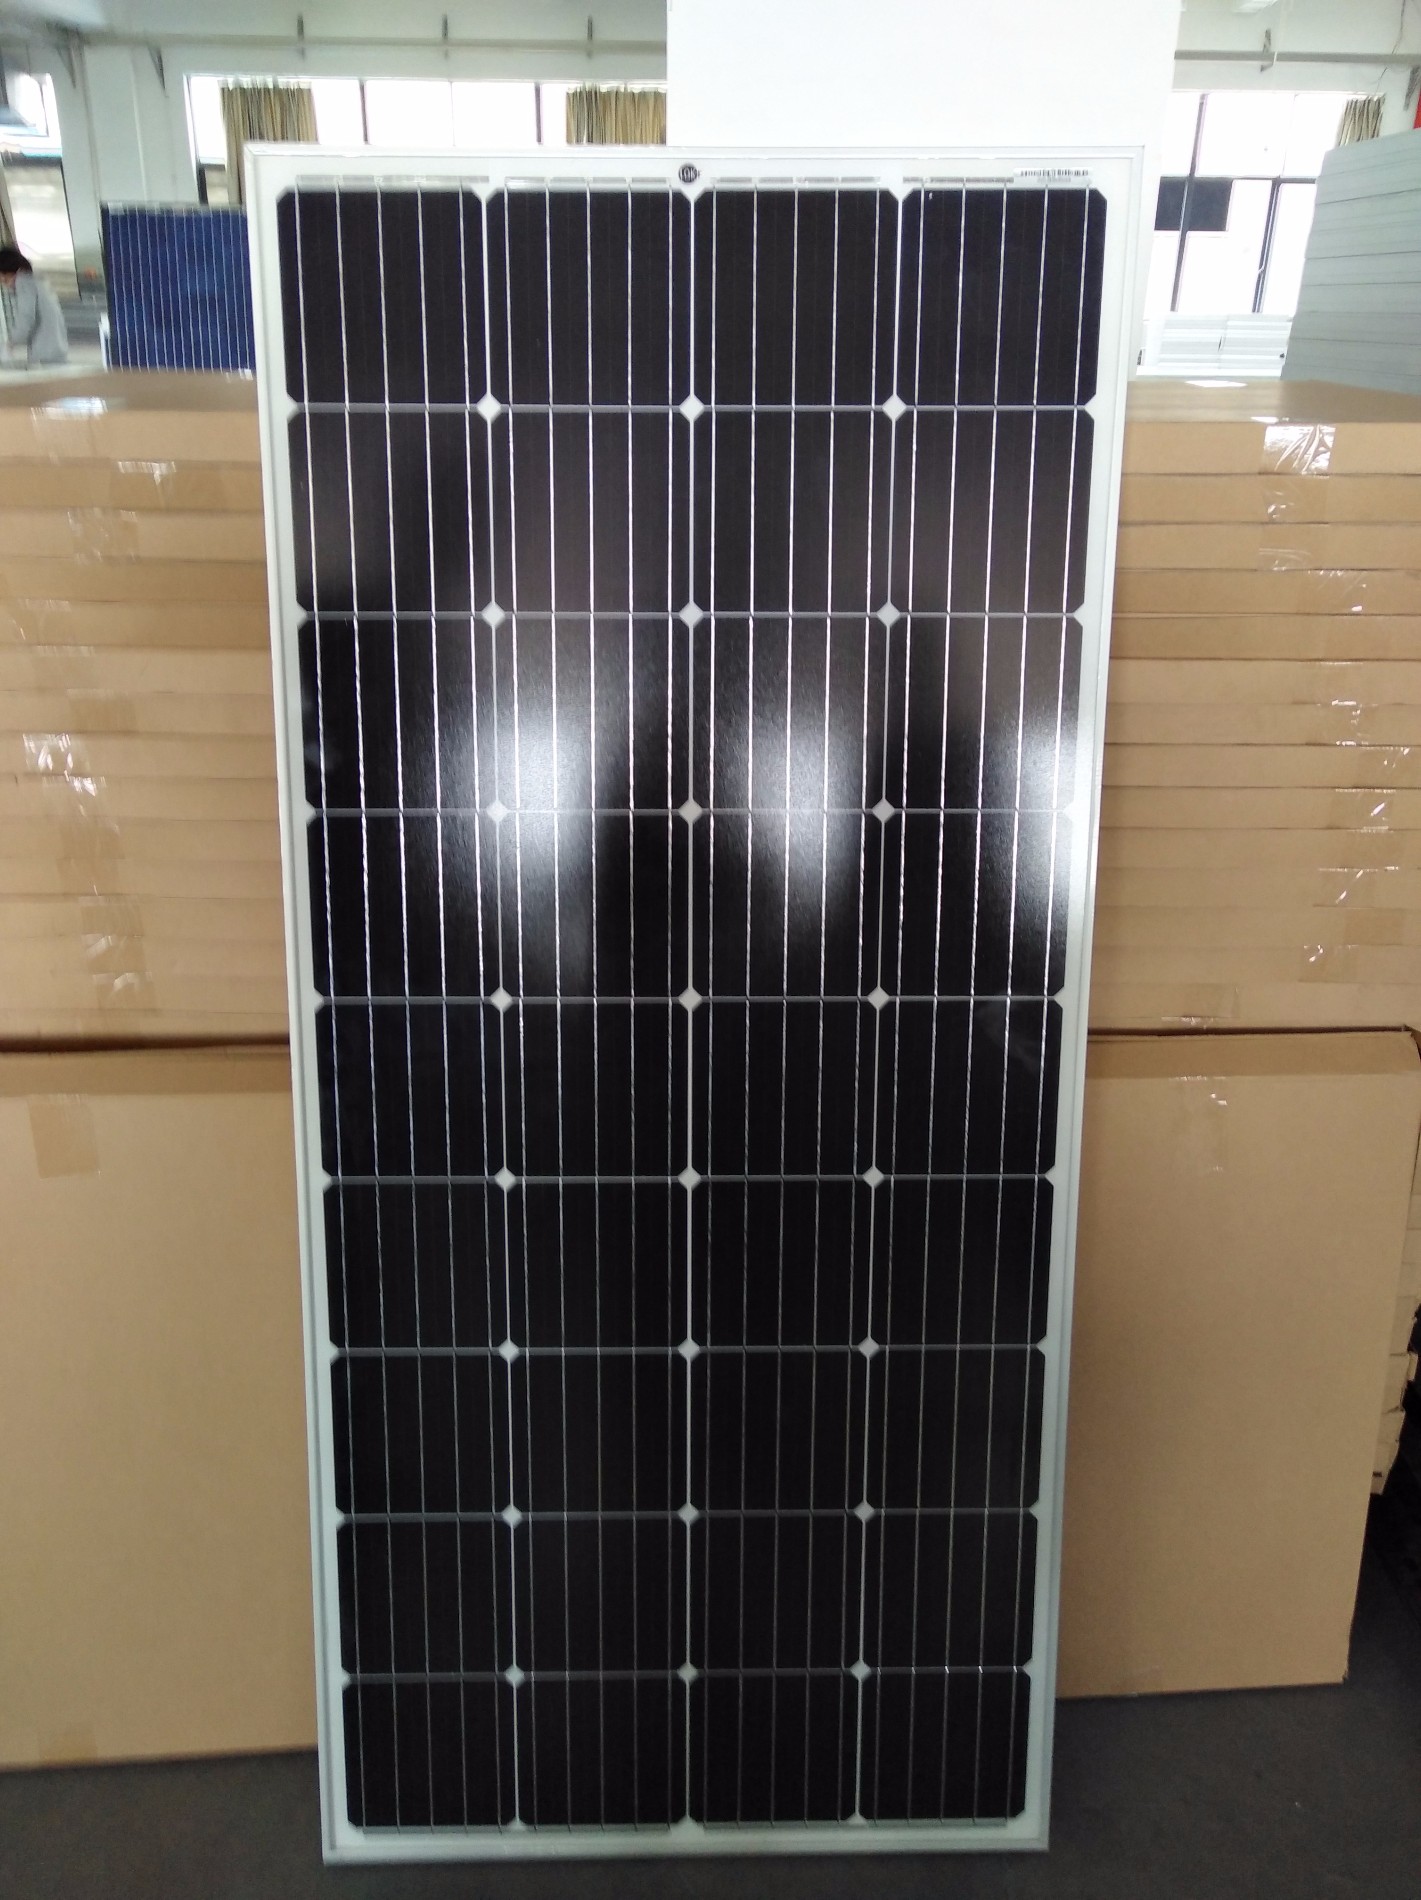 Jual Single Solar Photovoltaic Panel 150W, Beli Solar Cell dan Panel Merk